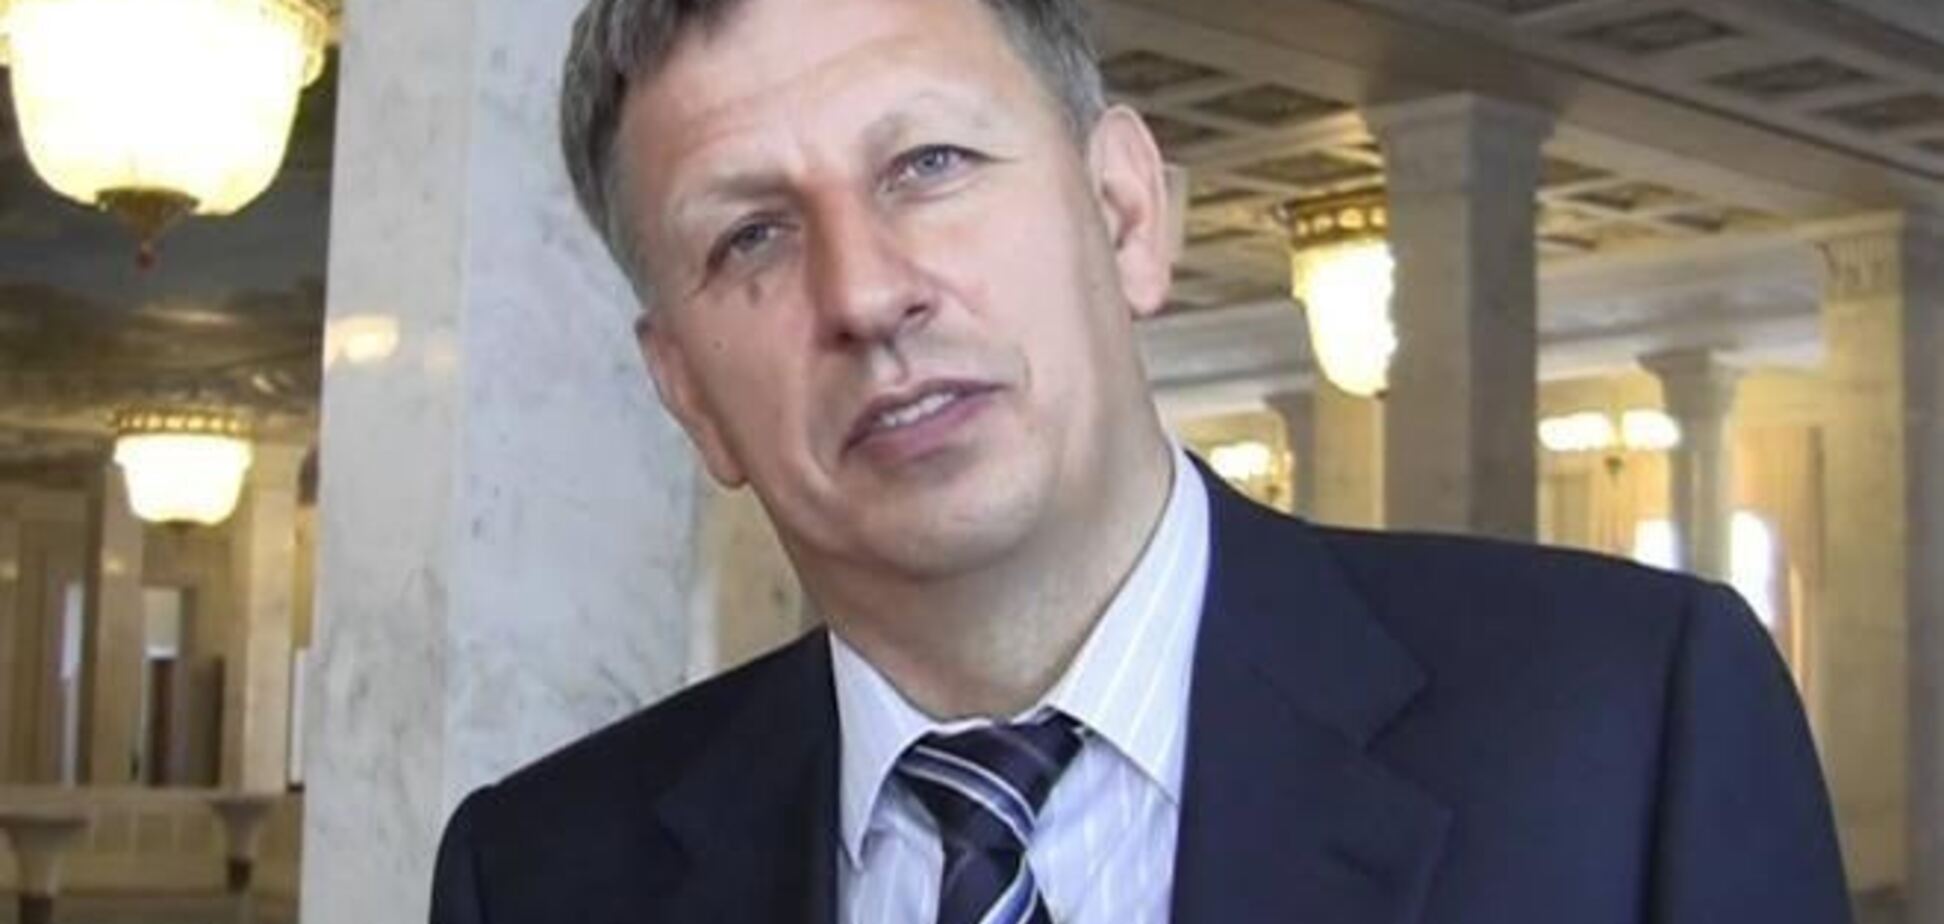  Макеенко подал заявление о сложении депутатских полномочий